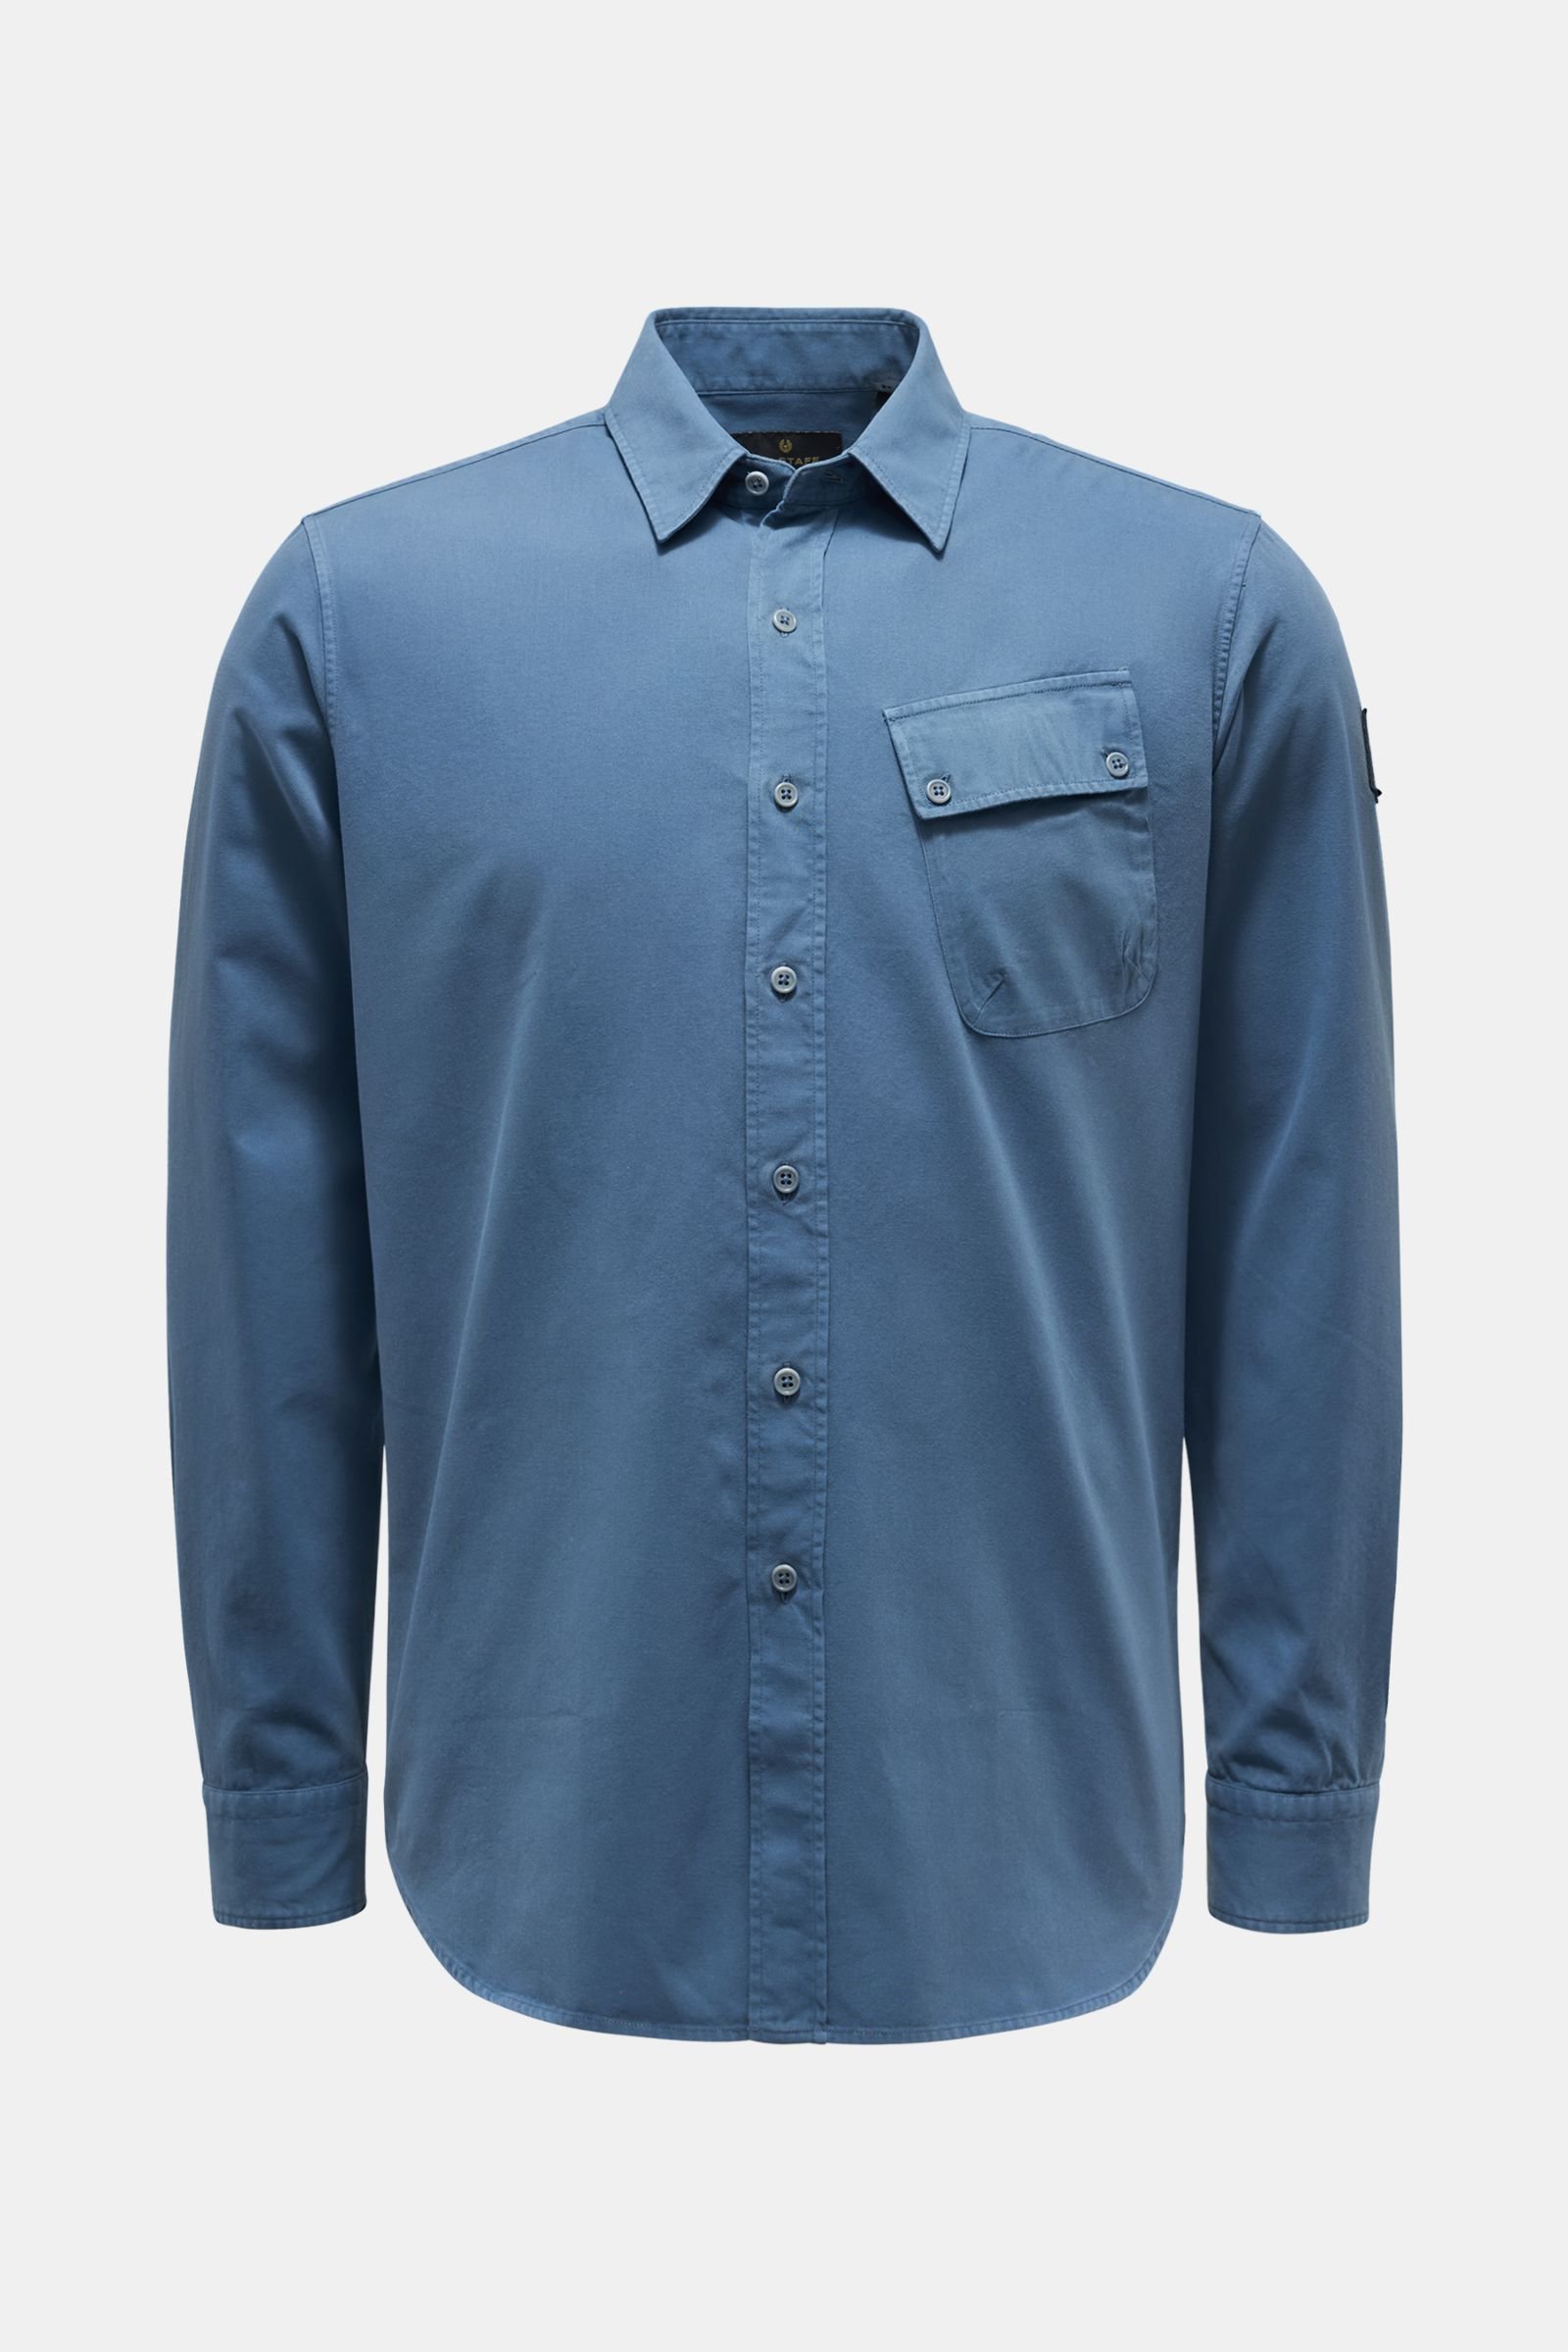 Casual shirt Kent collar grey-blue